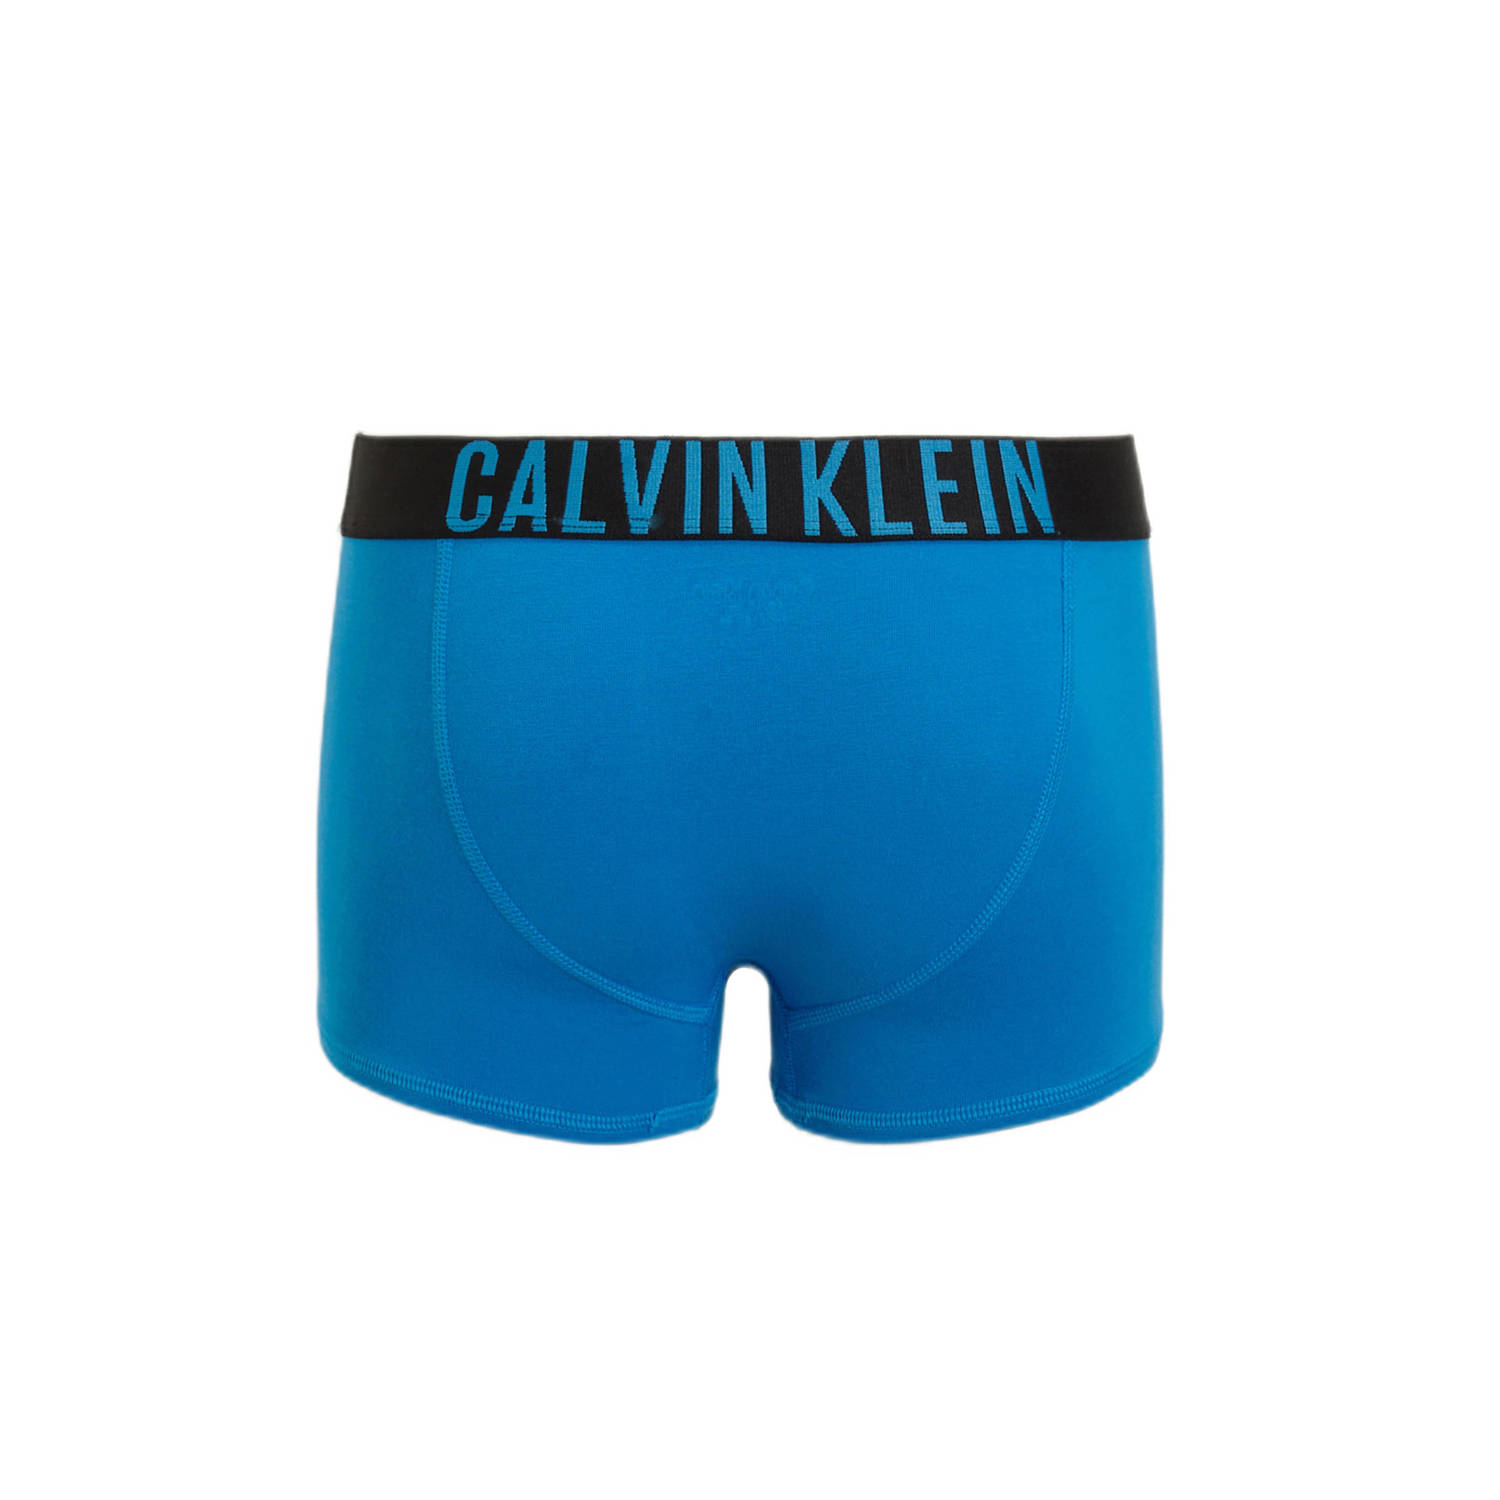 Calvin Klein boxershort set van 2 blauw zwart